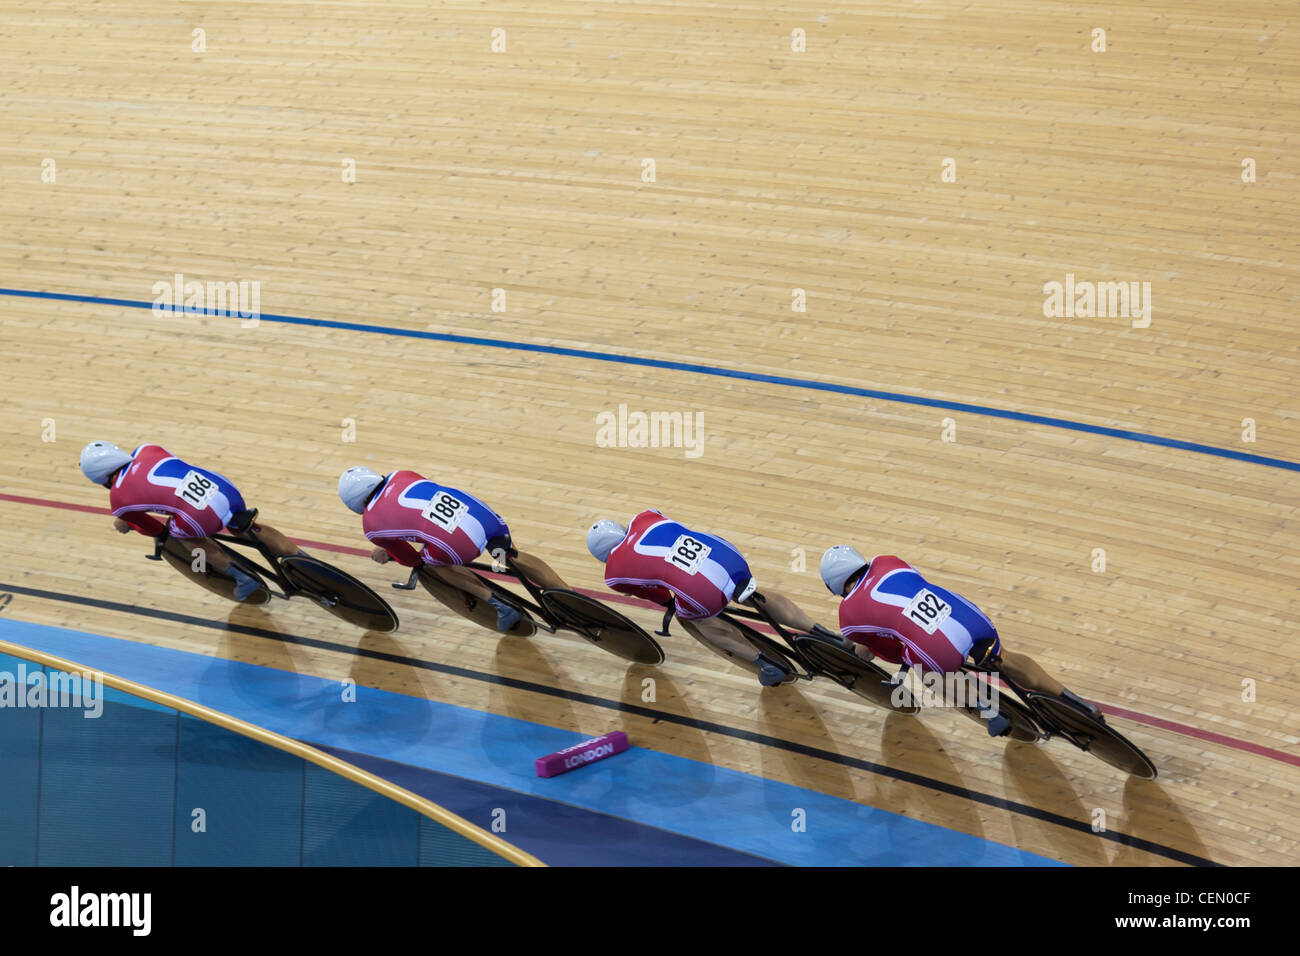 Gran Bretaña el equipo masculino de persecución ciclismo en pista UCI World Cup 2012 forma parte de la serie de Londres se prepara para los Olímpicos del 2012 Foto de stock